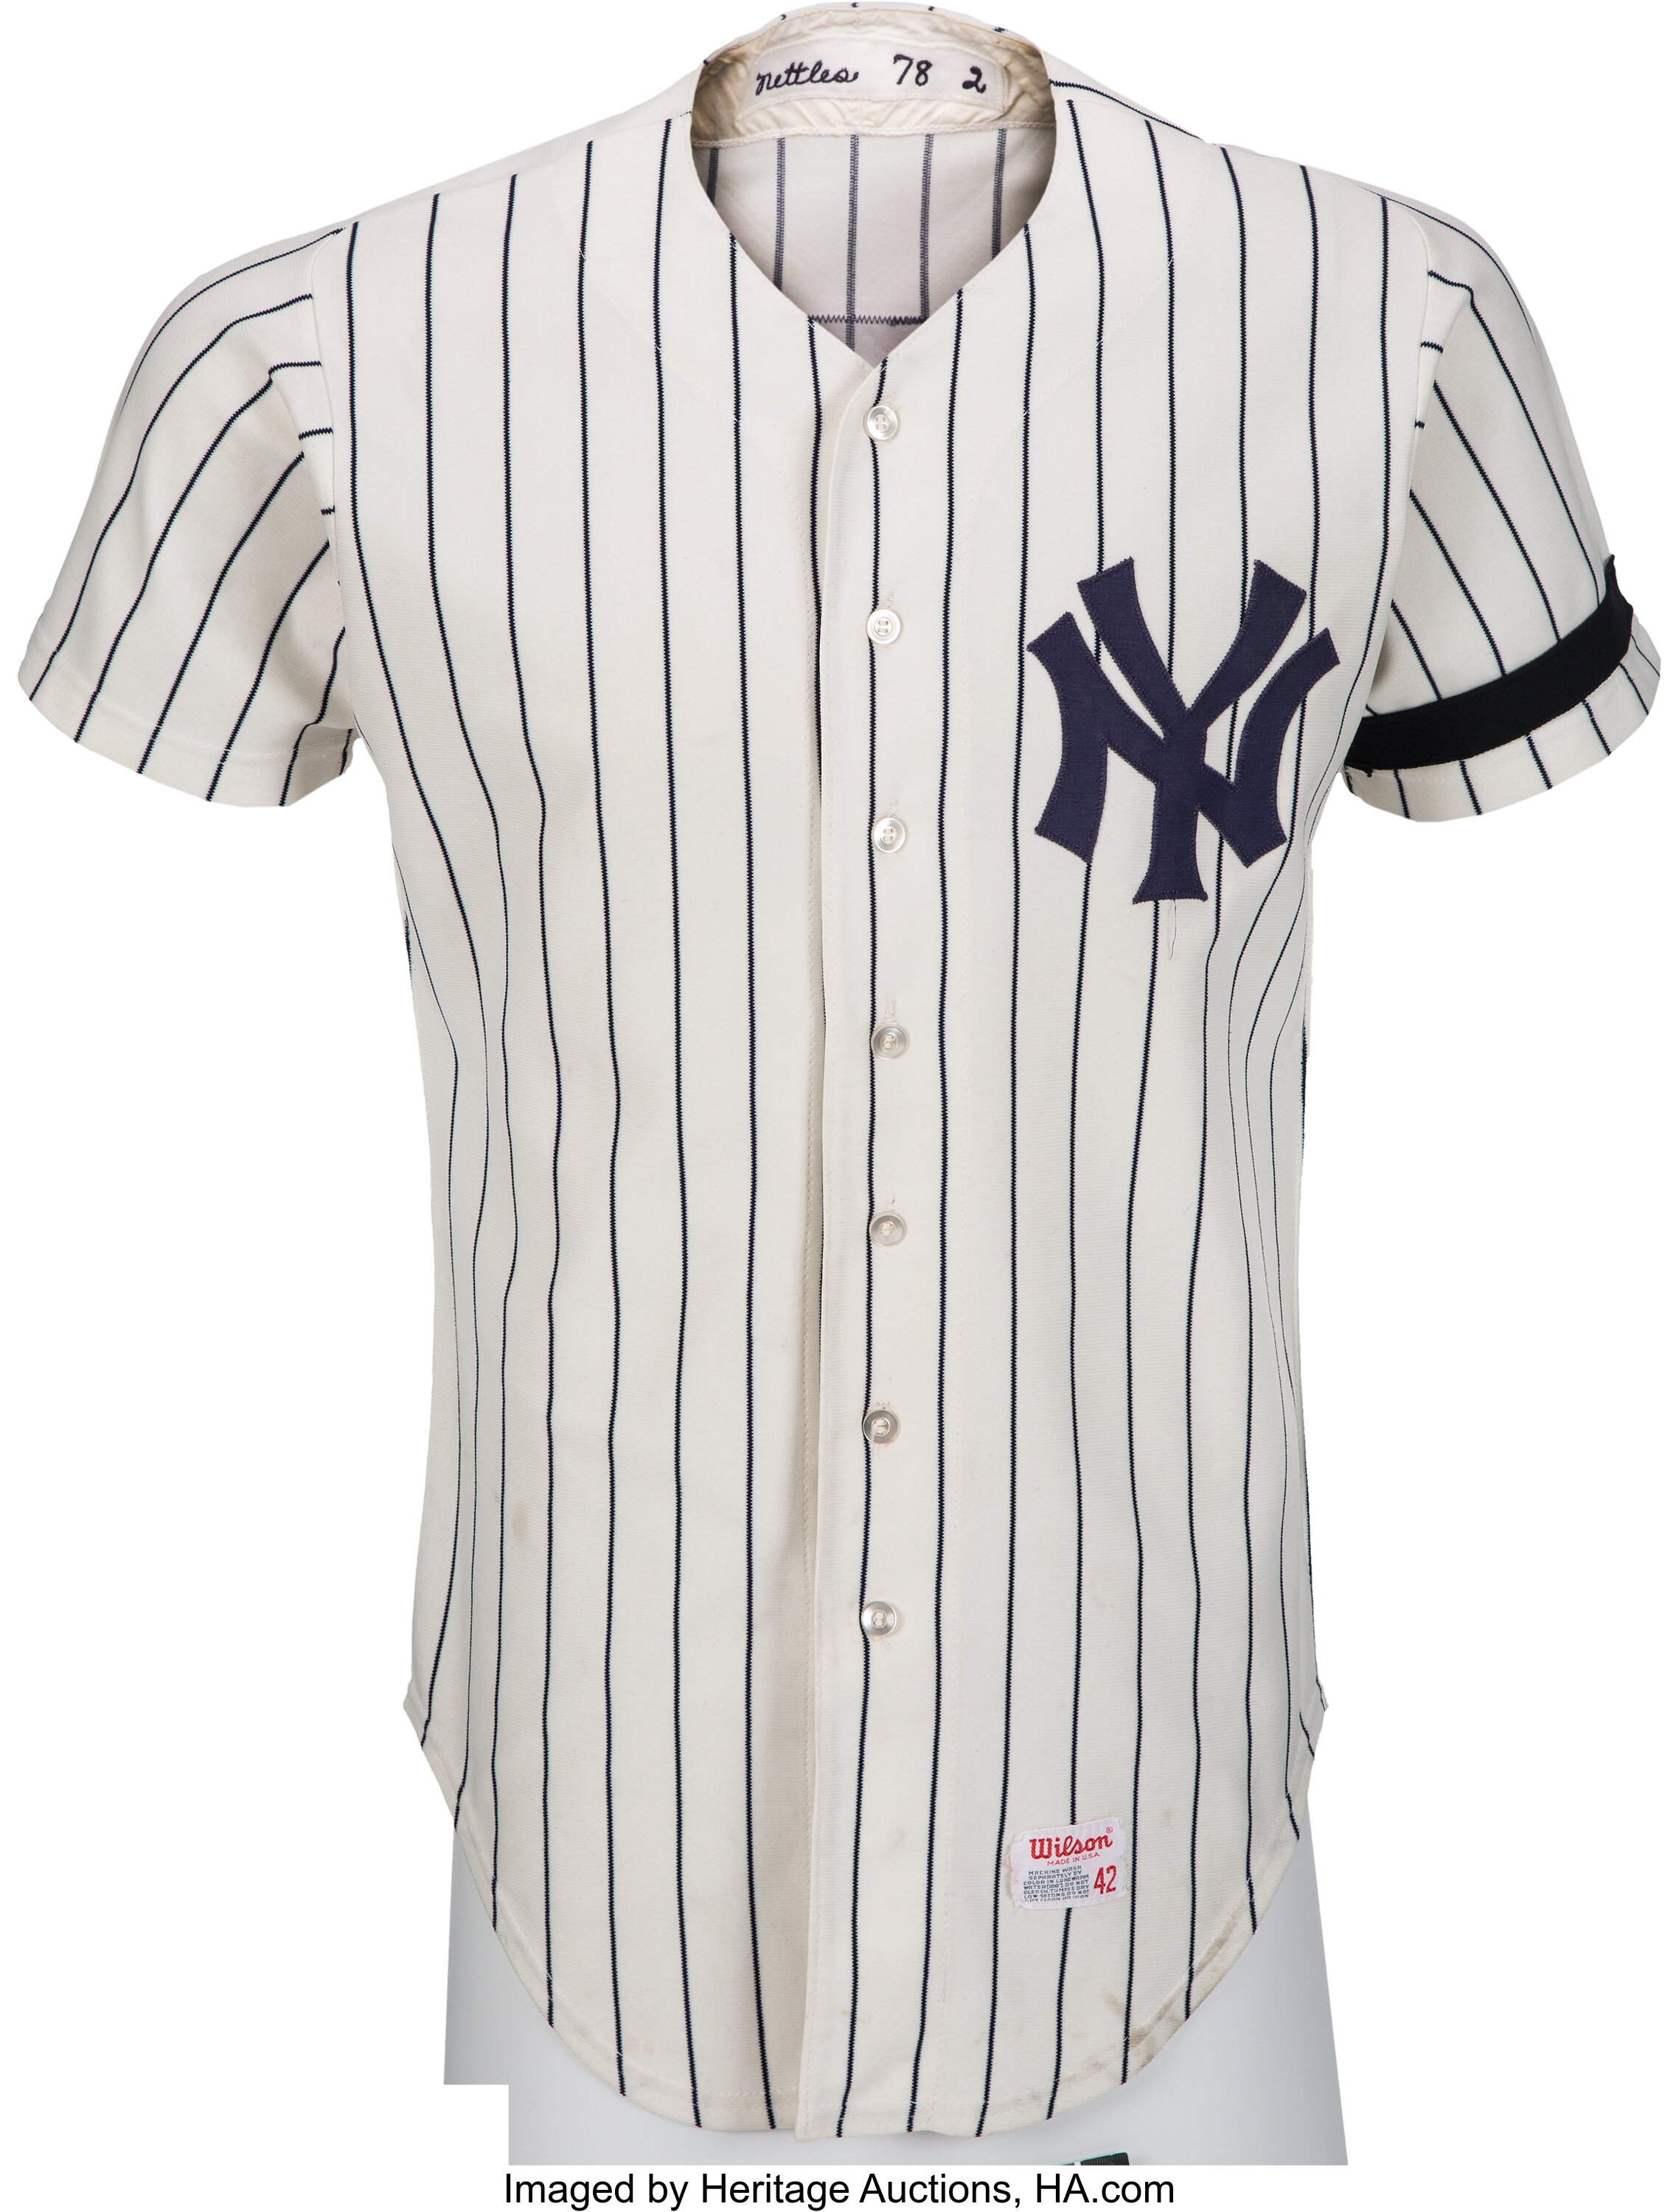  Graig Nettles New York Yankees MLB Hologram 8x10 Color